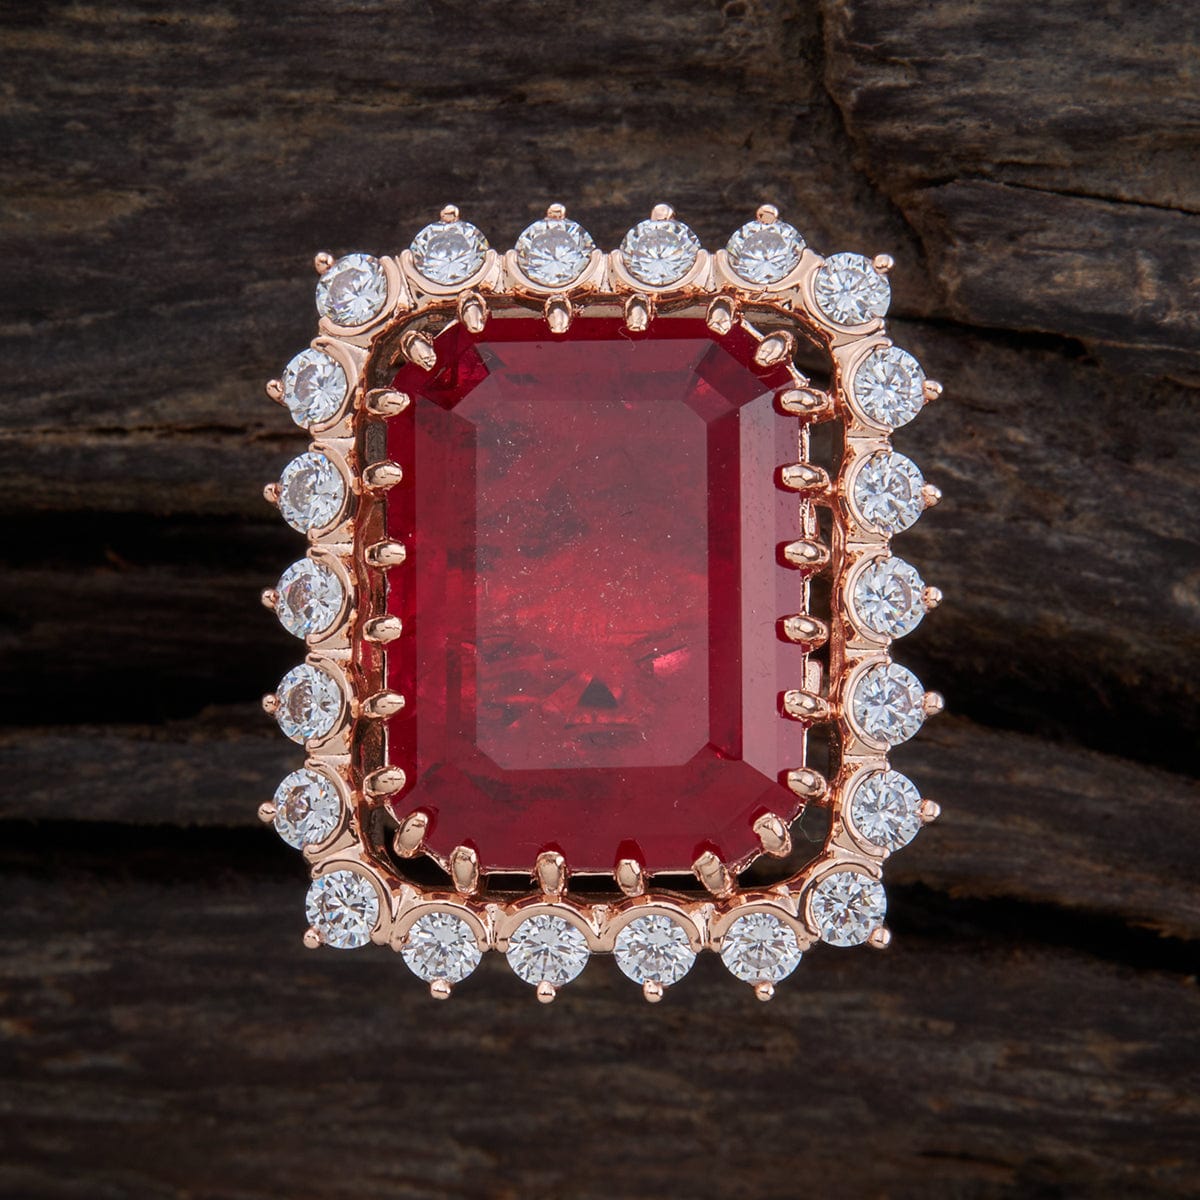 12.25 Ratti Natural Certified Gold Ruby Manik Gemstone Panchdhatu Ring for  Men and Women… Finger Rings